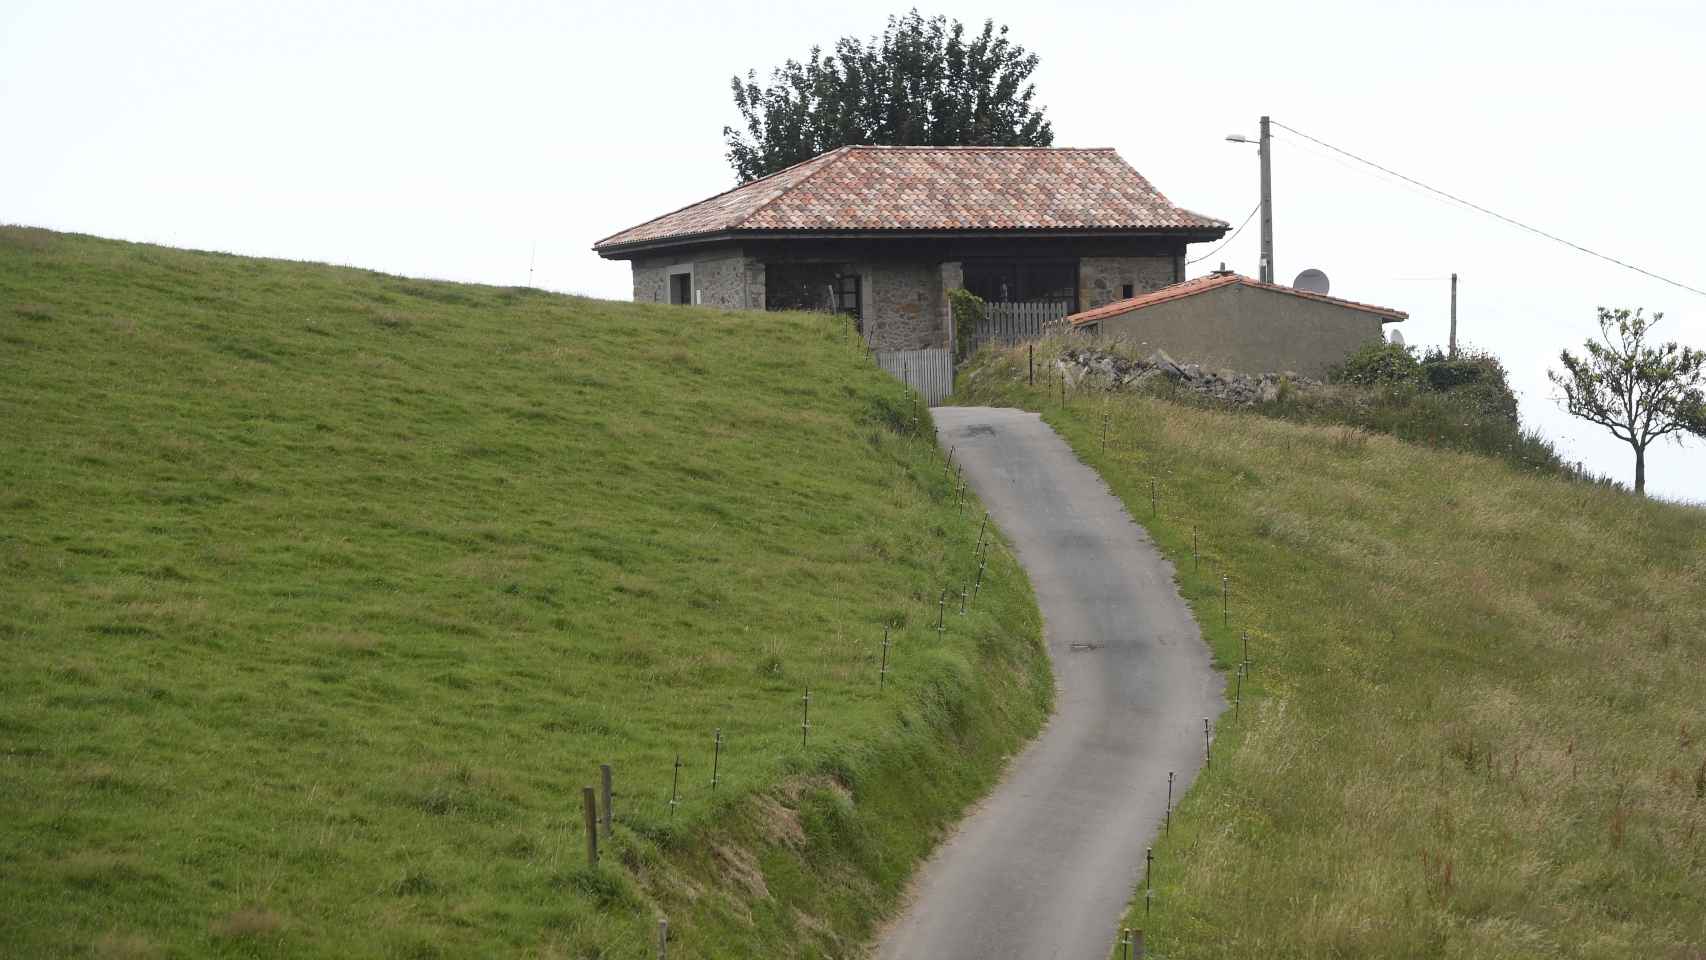 La casa de Sardéu donde vivió Menchu Álvarez del Valle, rodeada de vegetación.